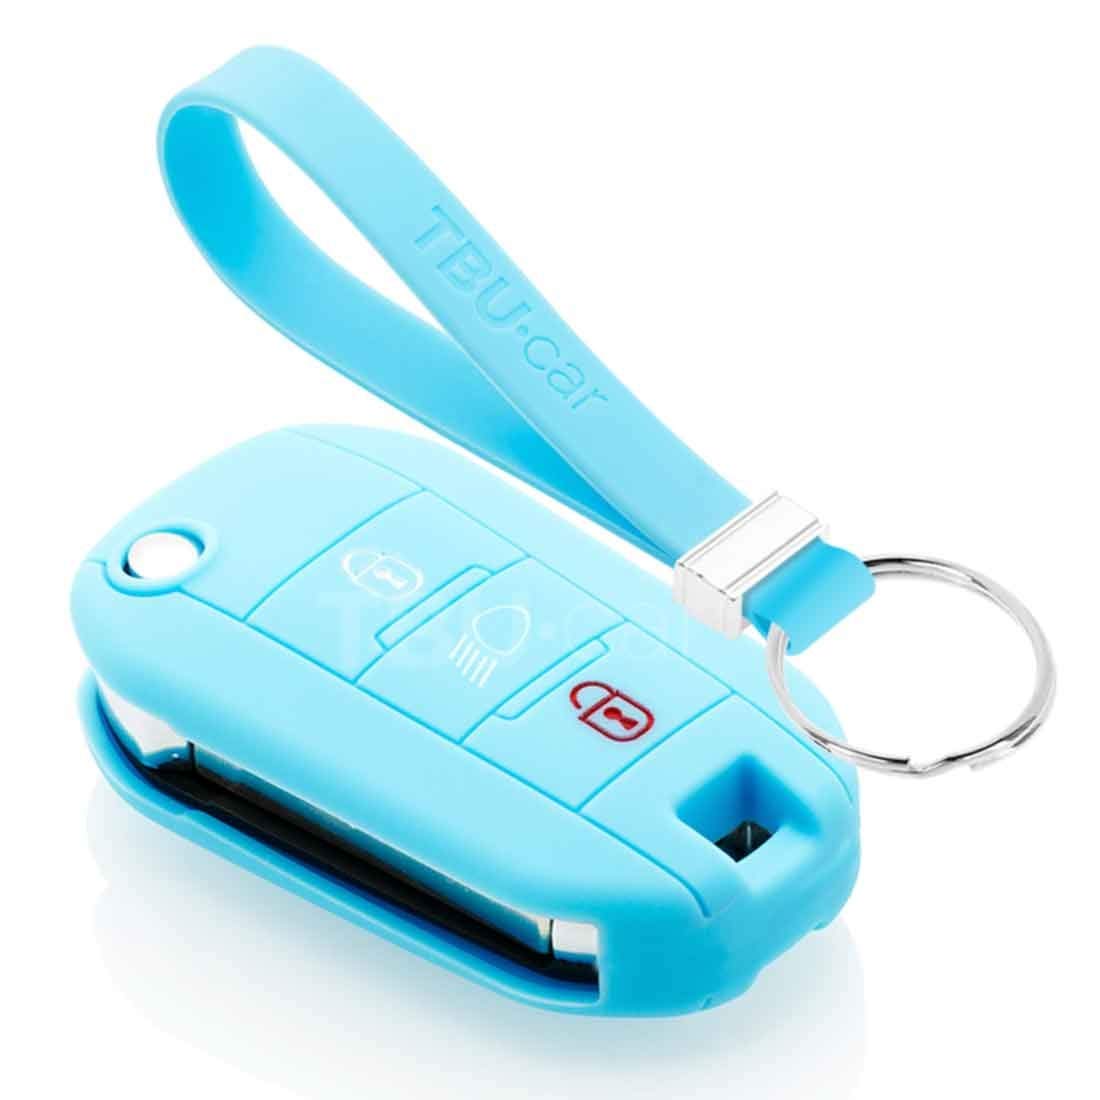 TBU car Autoschlüssel Hülle kompatibel mit Peugeot 3 Tasten (Licht Taste) - Schutzhülle aus Silikon - Auto Schlüsselhülle Cover in Hellblau von TBU car